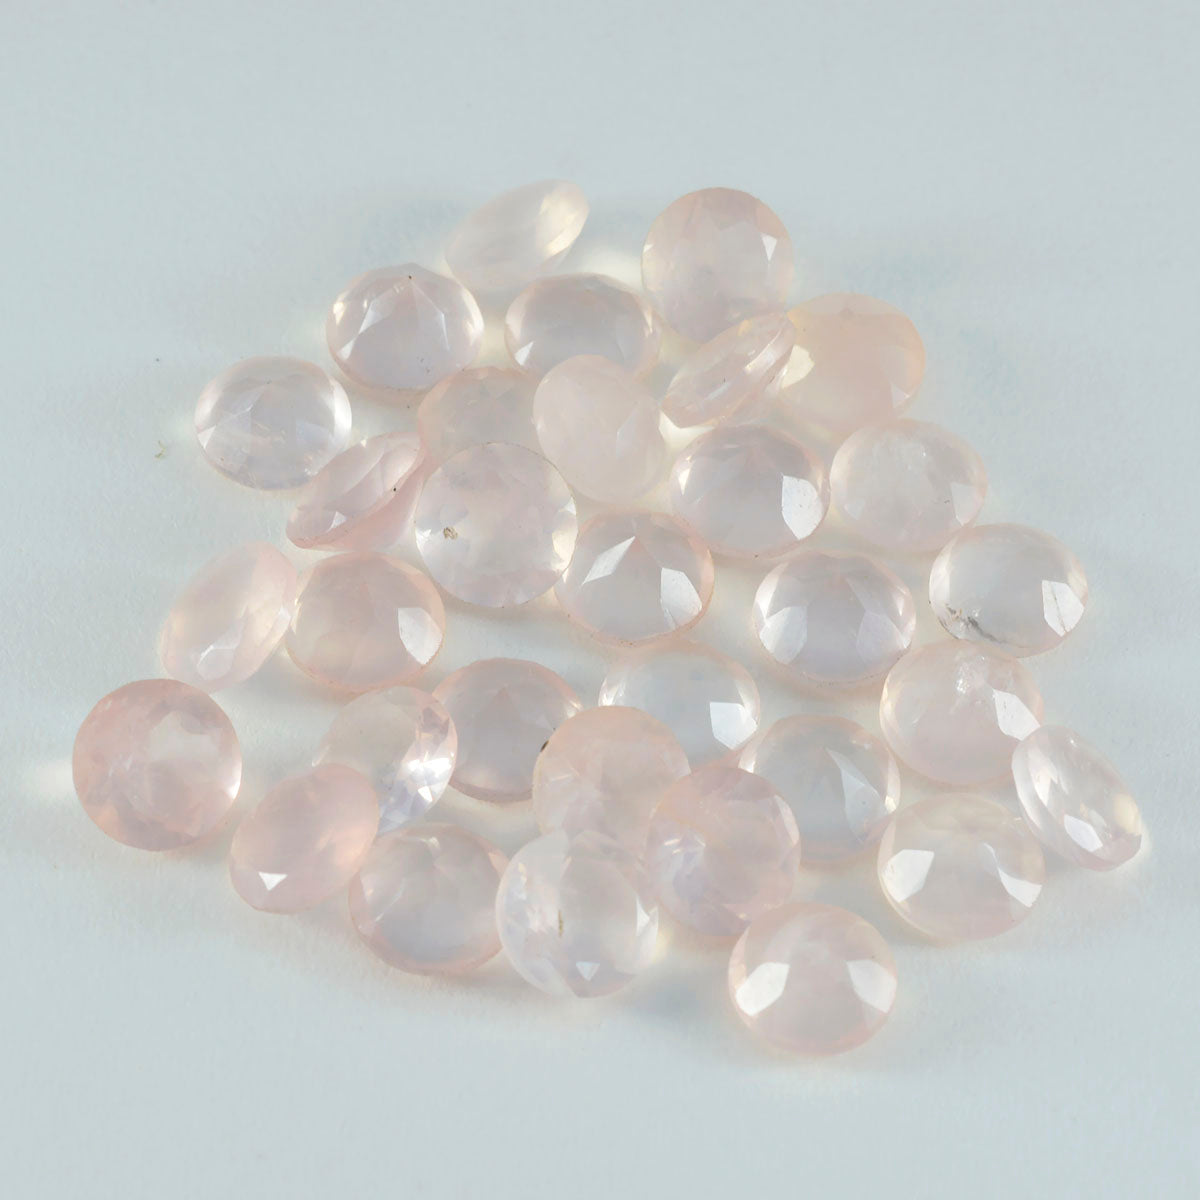 riyogems 1шт розовый кварц ограненный 7x7 мм круглая форма хорошее качество свободные драгоценные камни